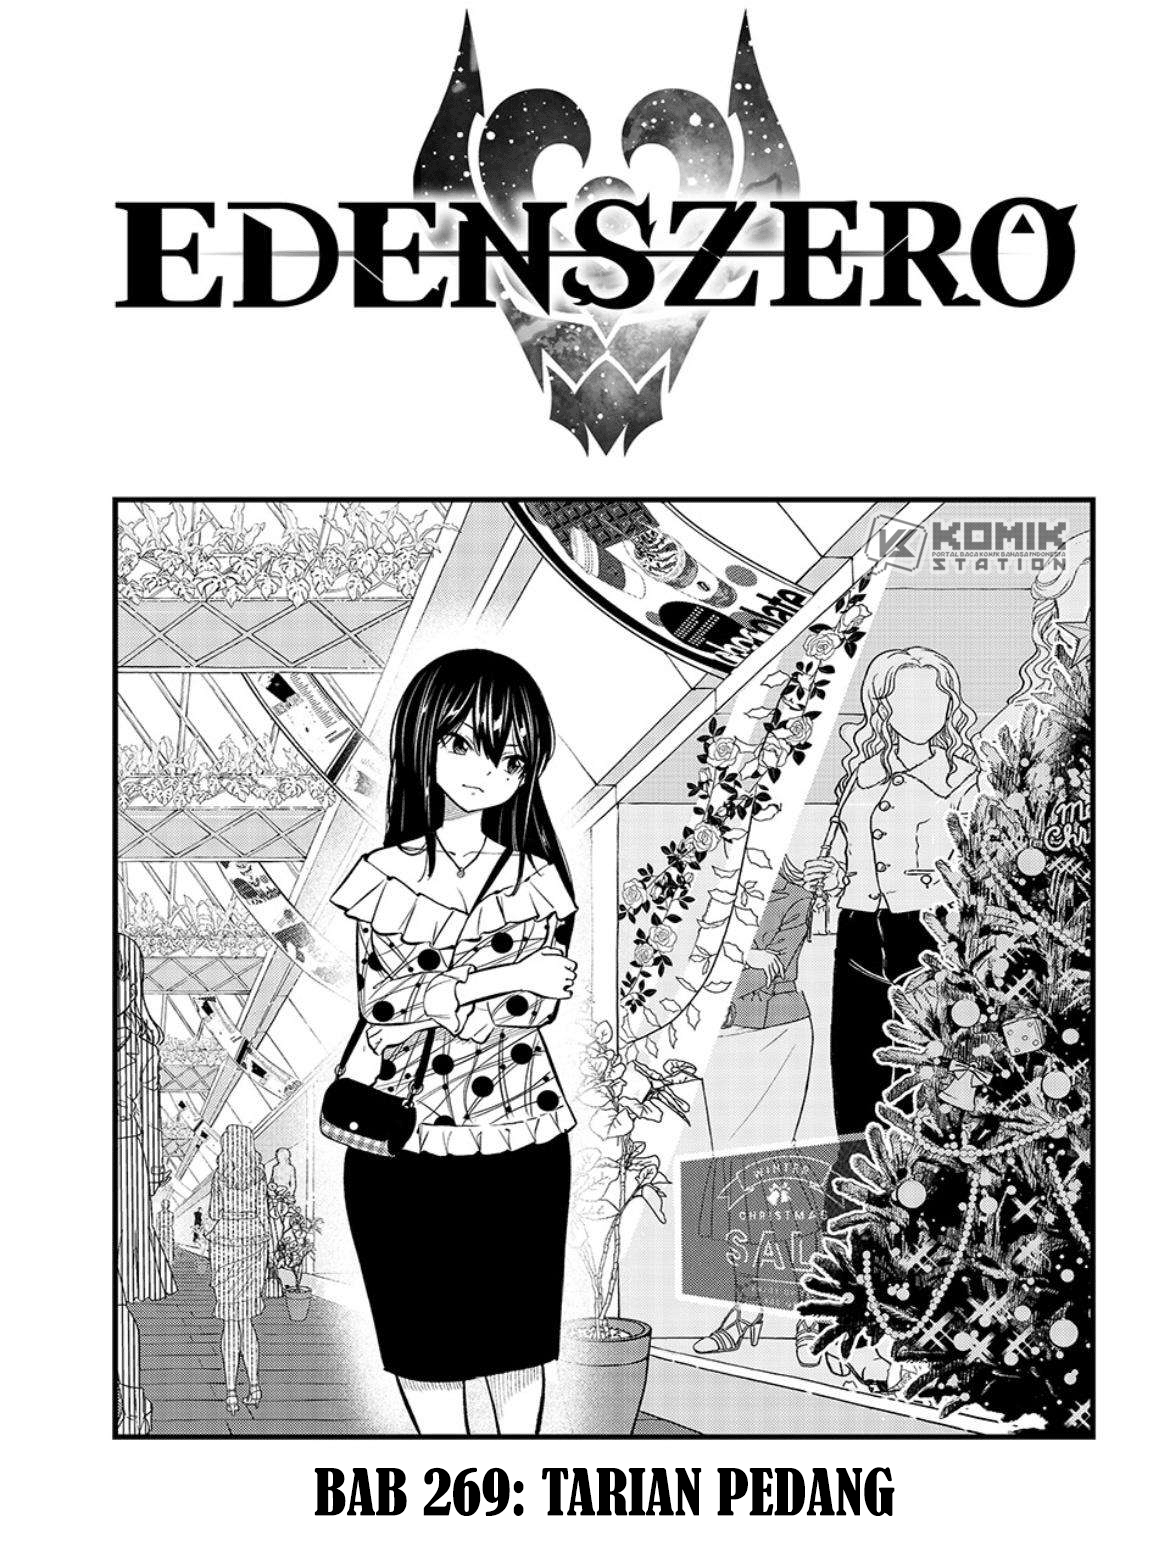 Eden’s Zero Chapter 269